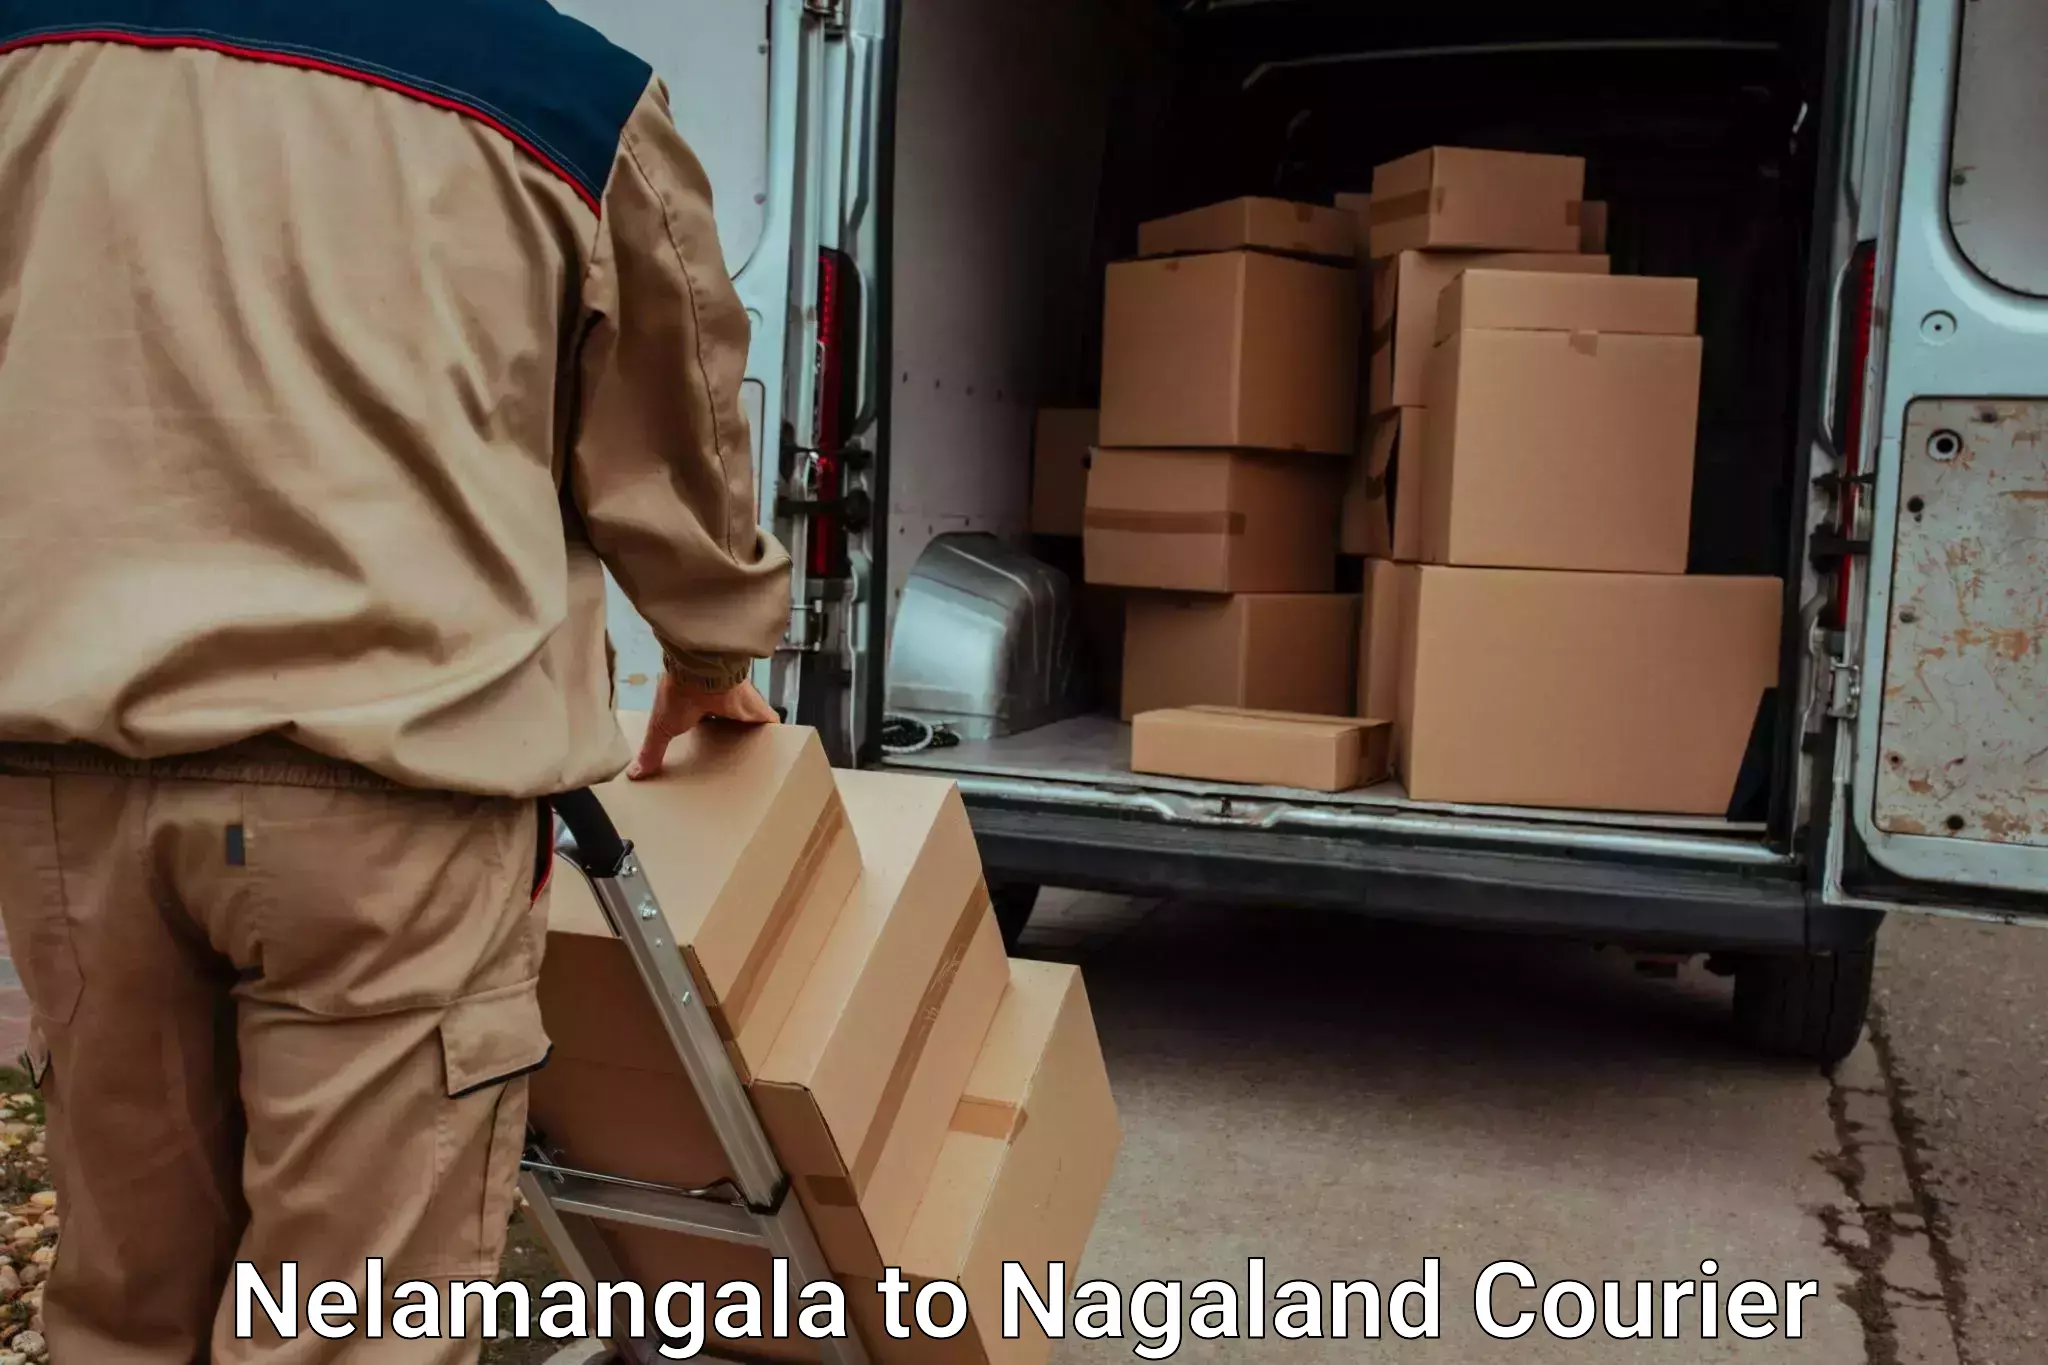 Same day luggage service Nelamangala to NIT Nagaland